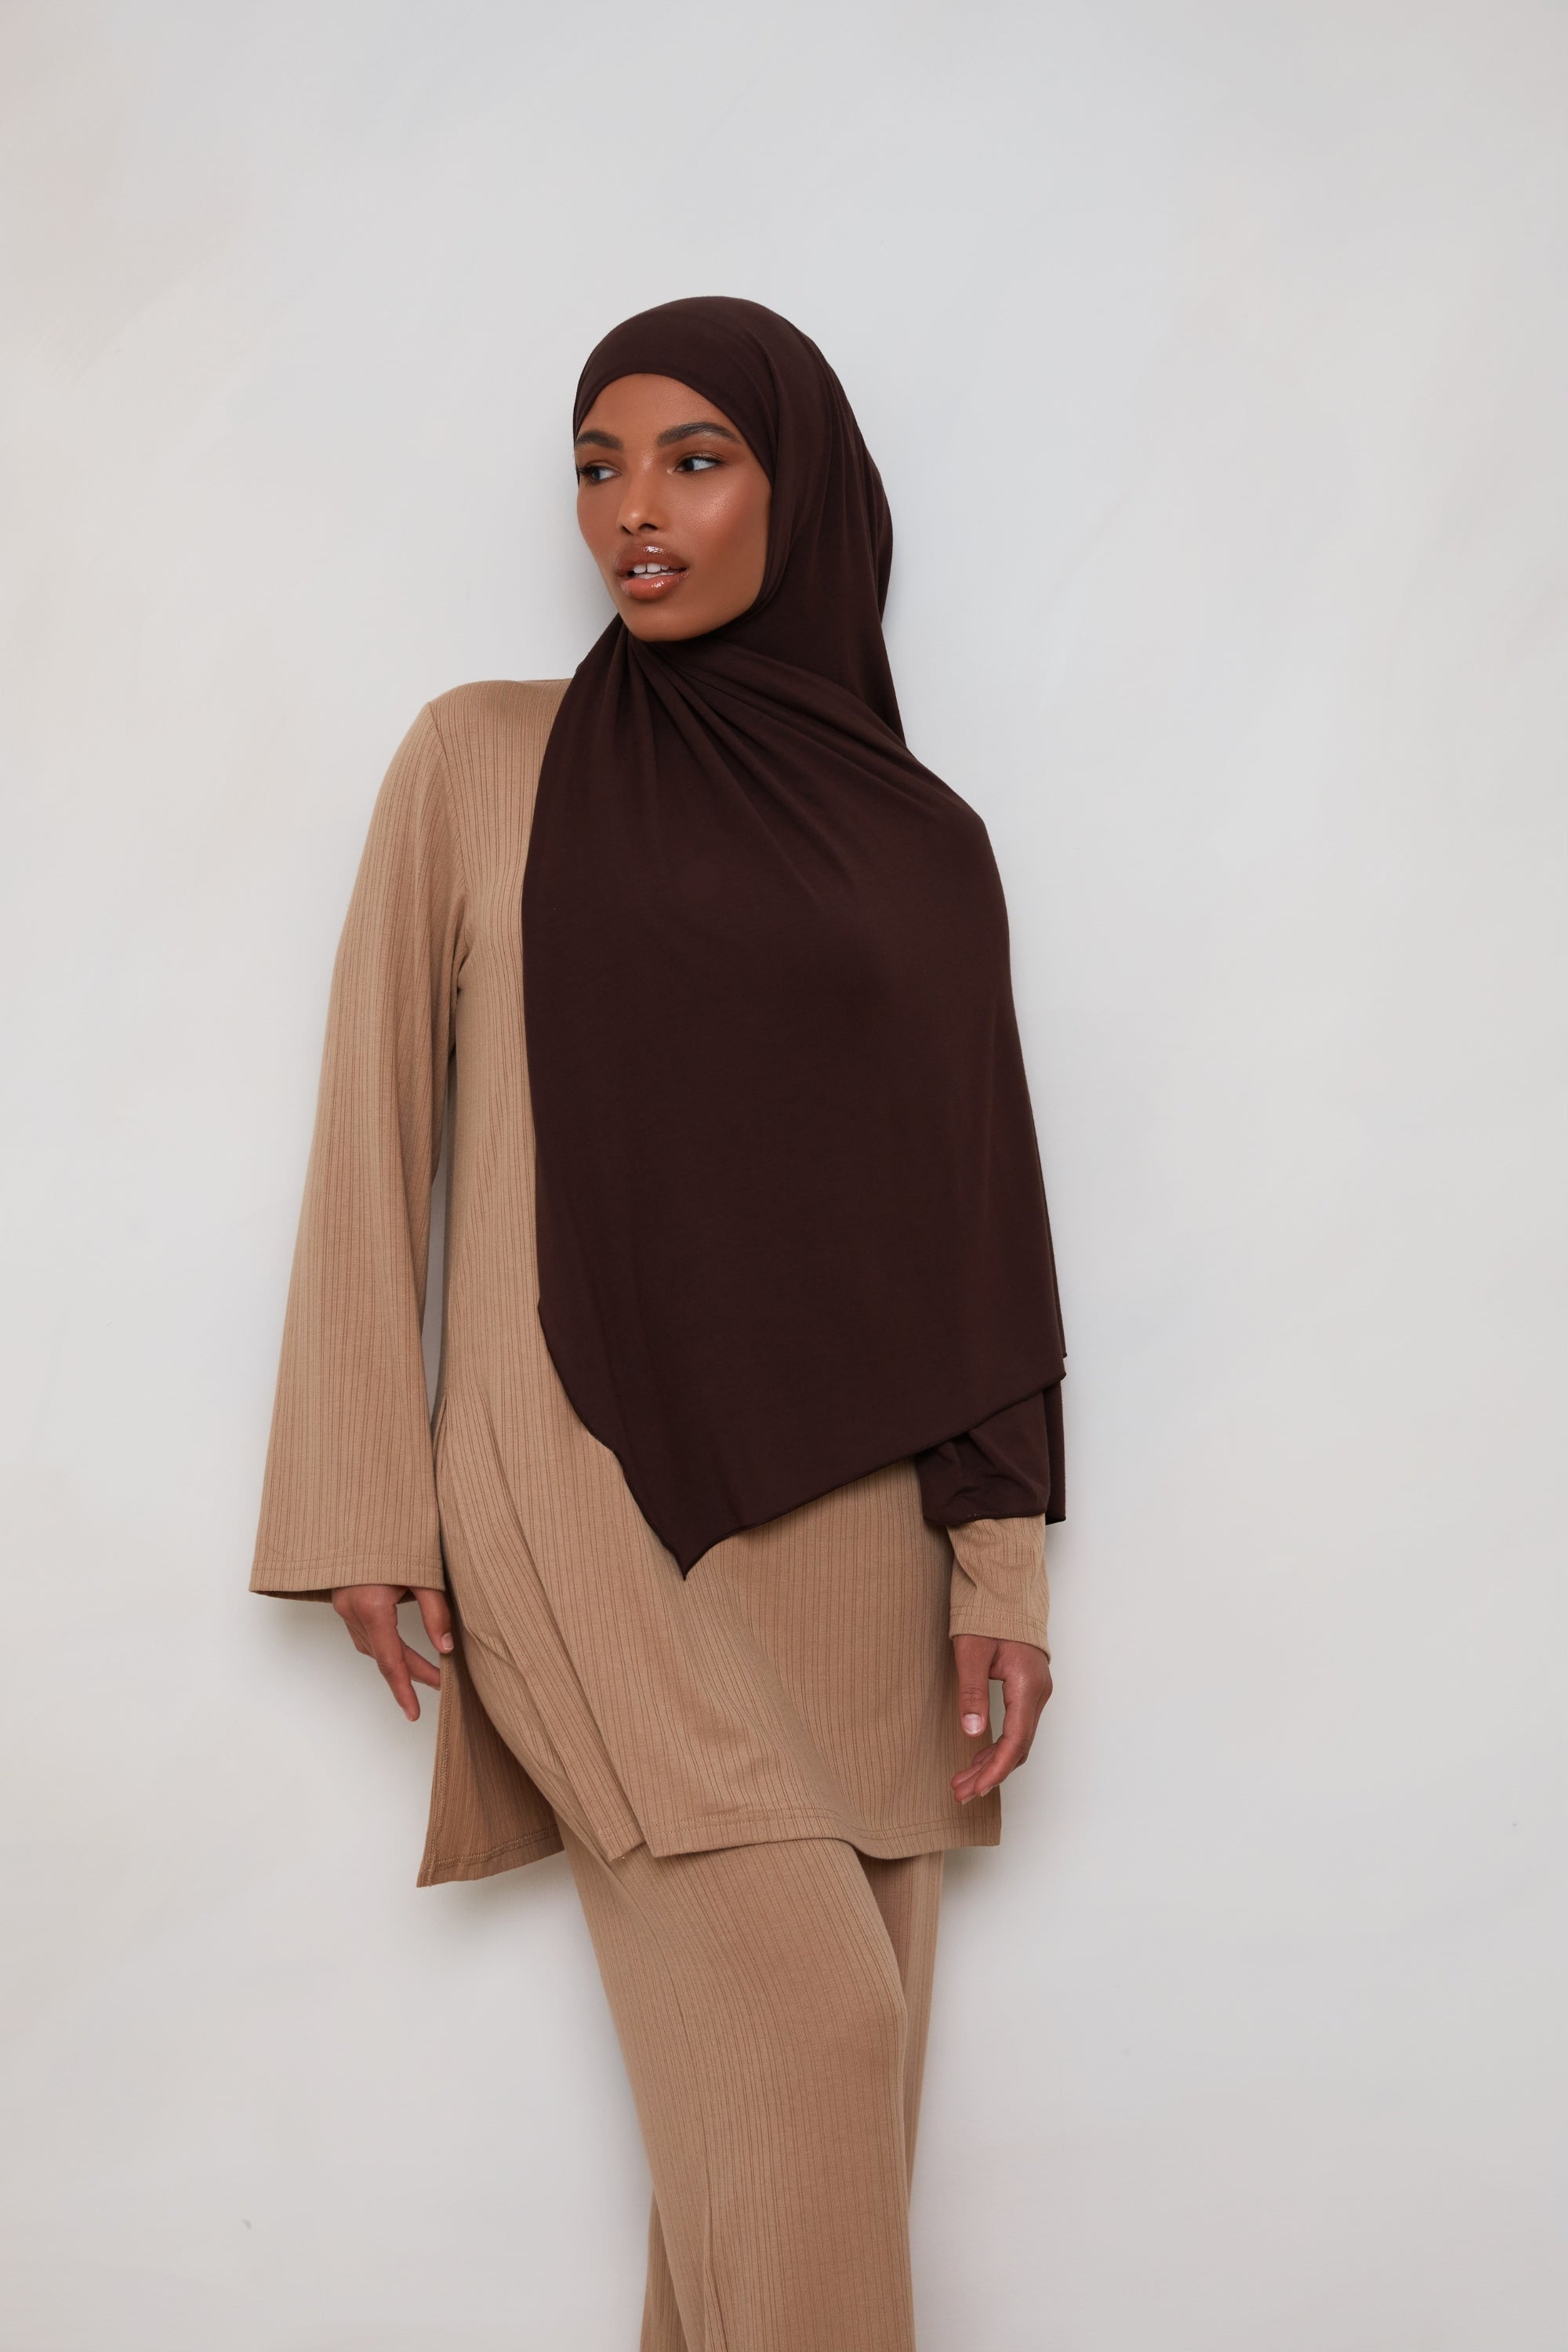 Bamboo Jersey Hijab - Chocolate Plum Veiled 